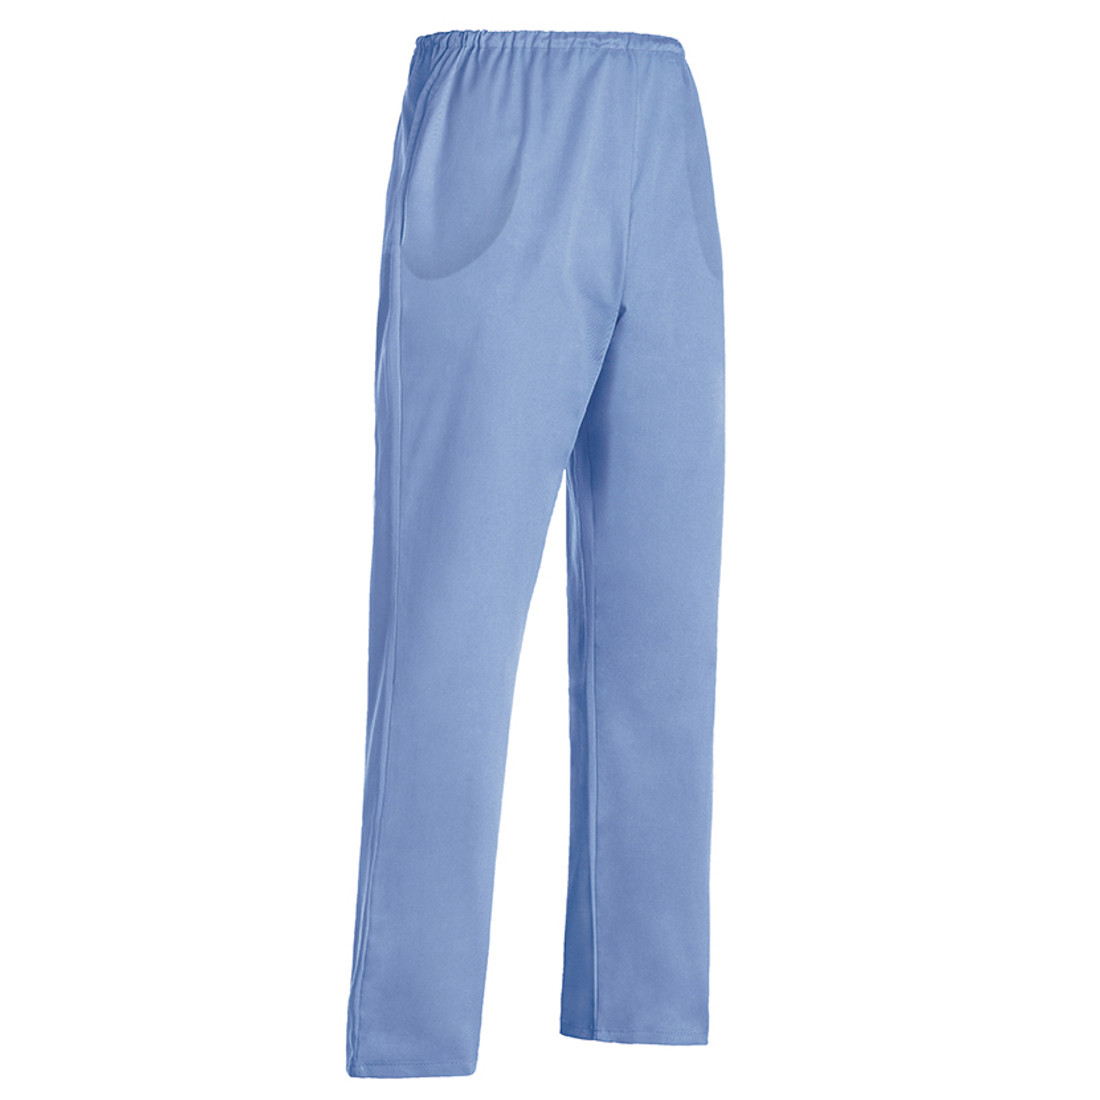 Pantalon Nurse - Les vêtements de protection